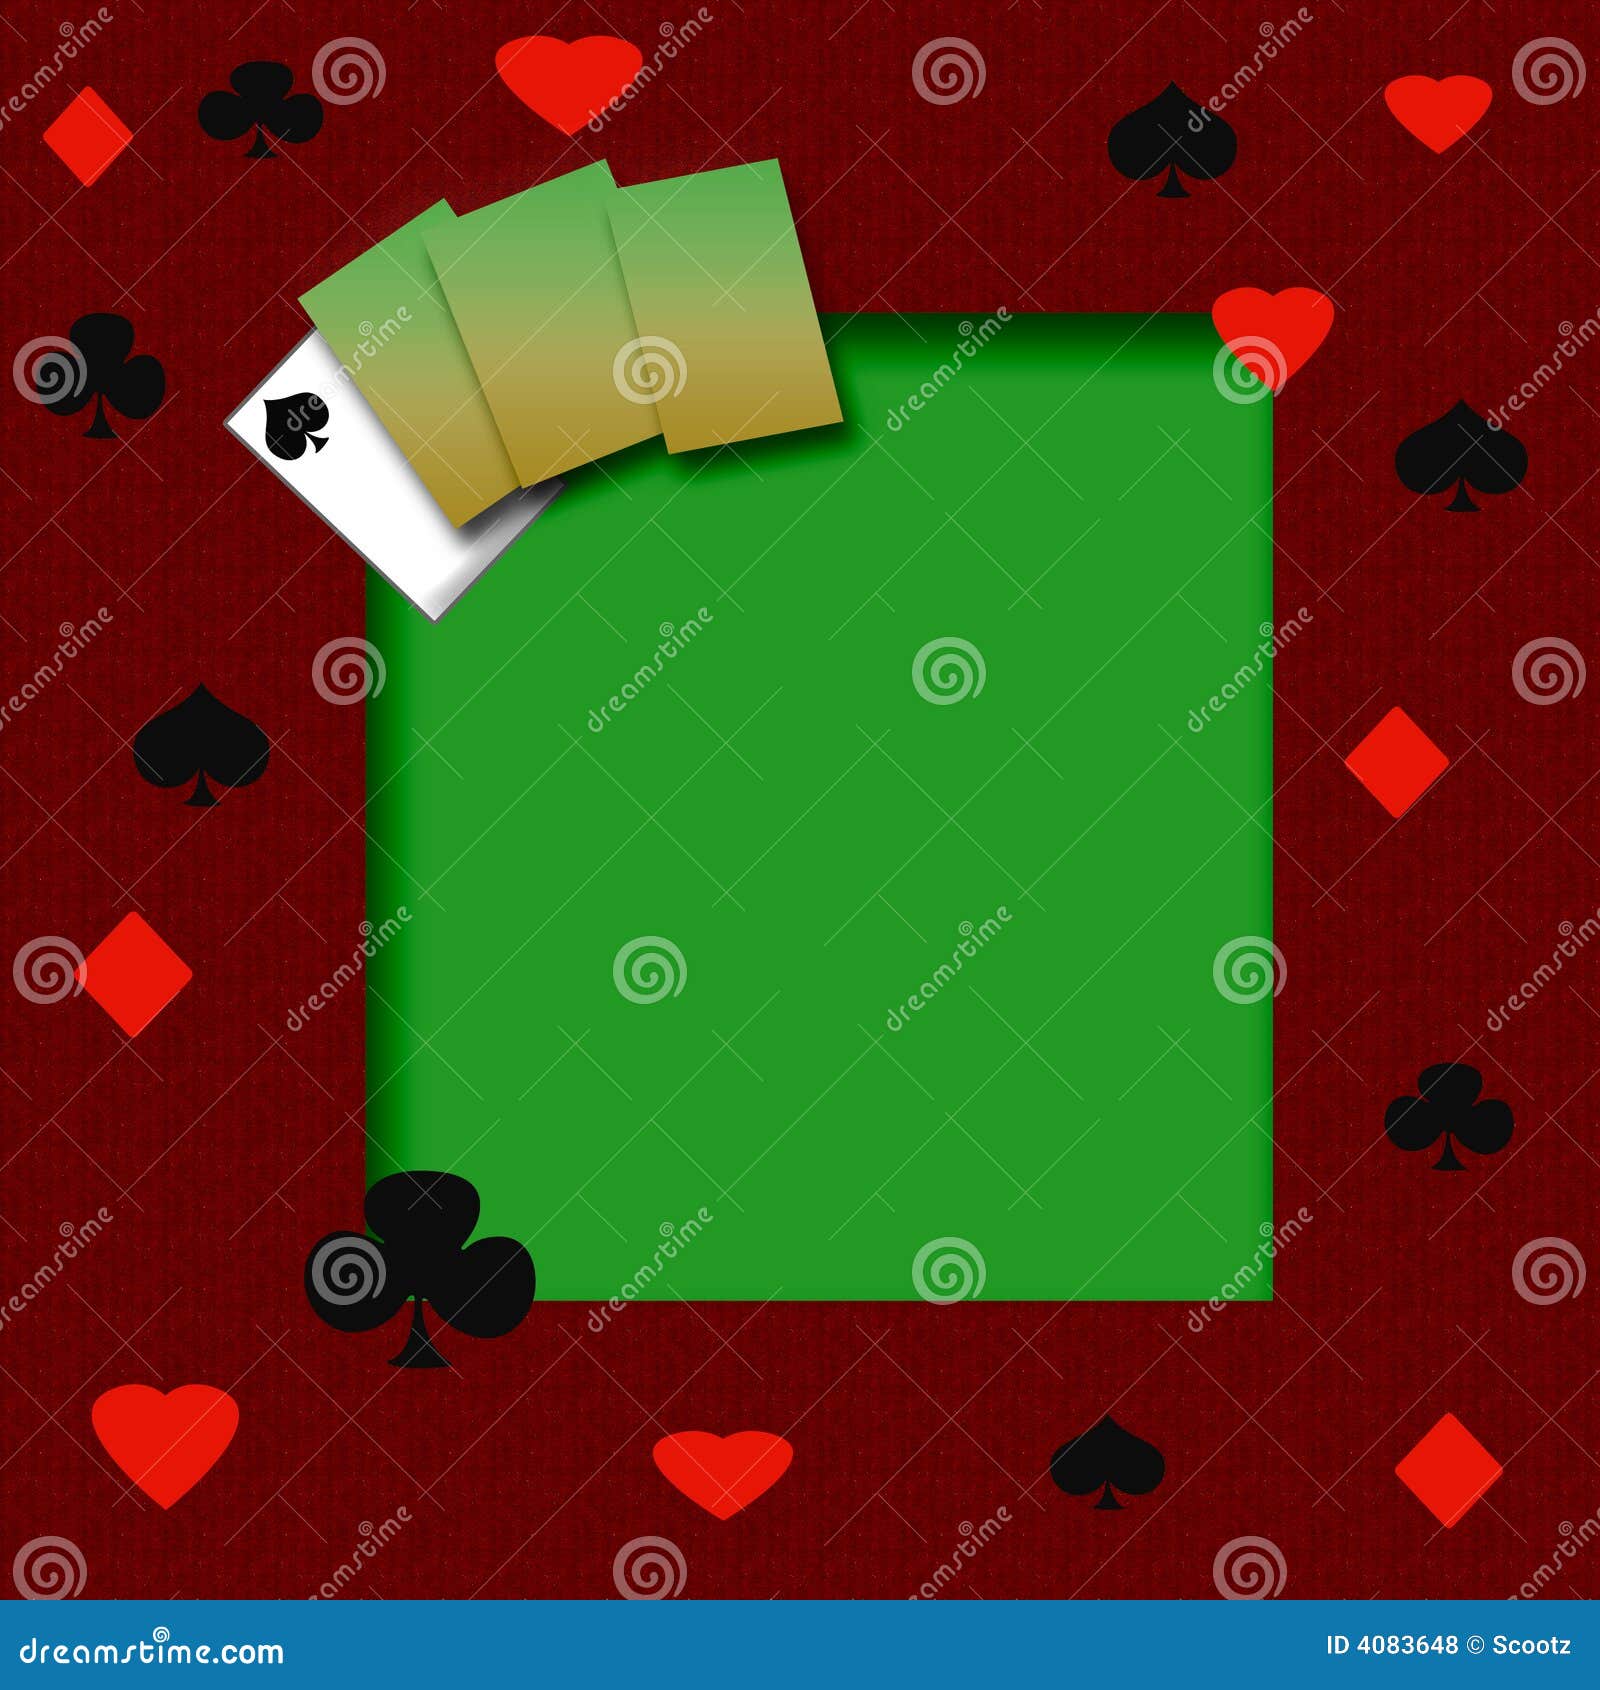 poker-game-frame-4083648.jpg